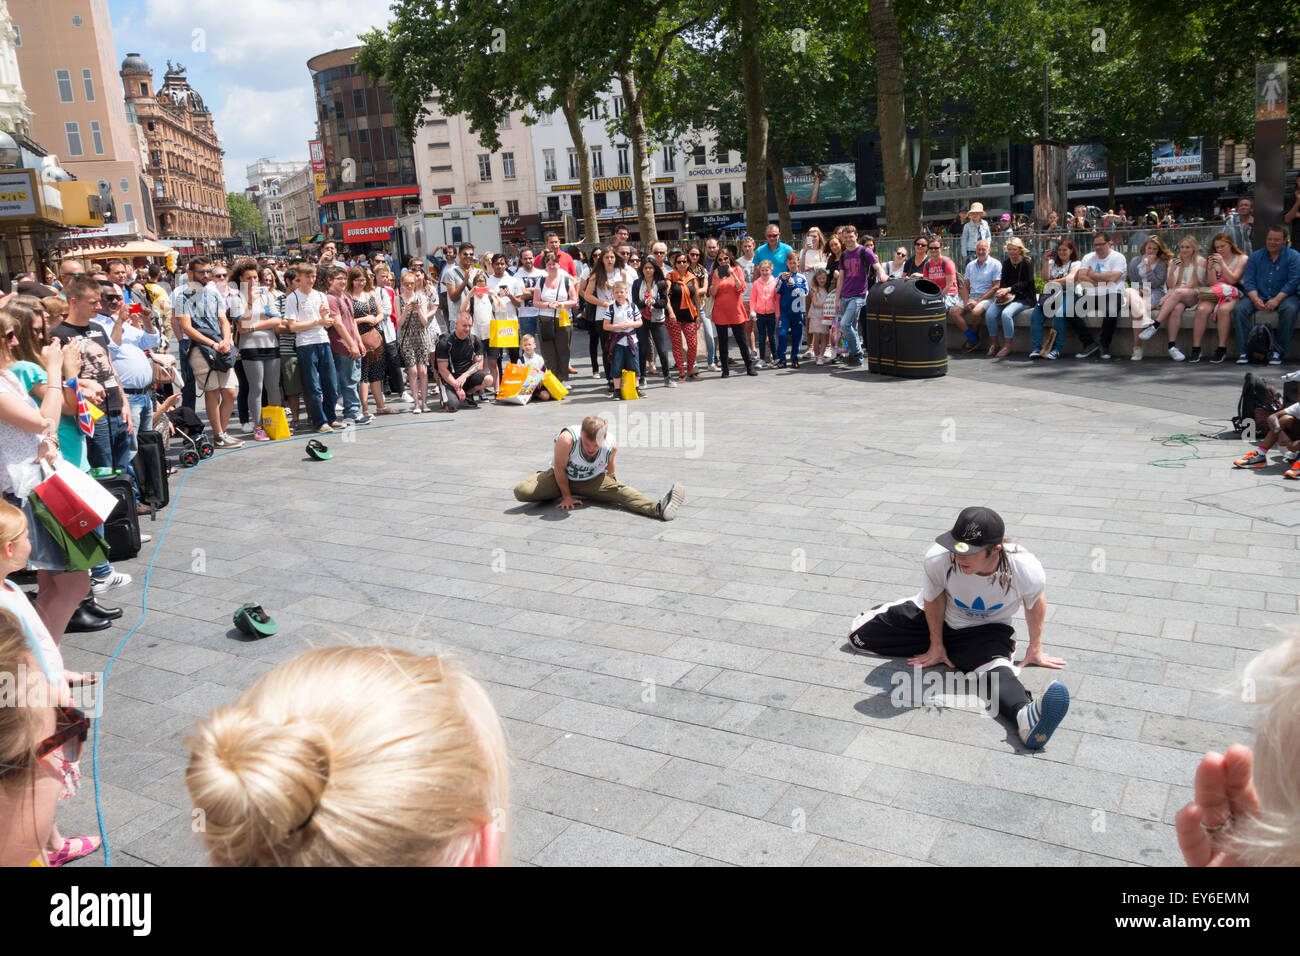 Straßenkünstlern tanzen vor einem Publikum in Leicester Square, London England UK Stockfoto